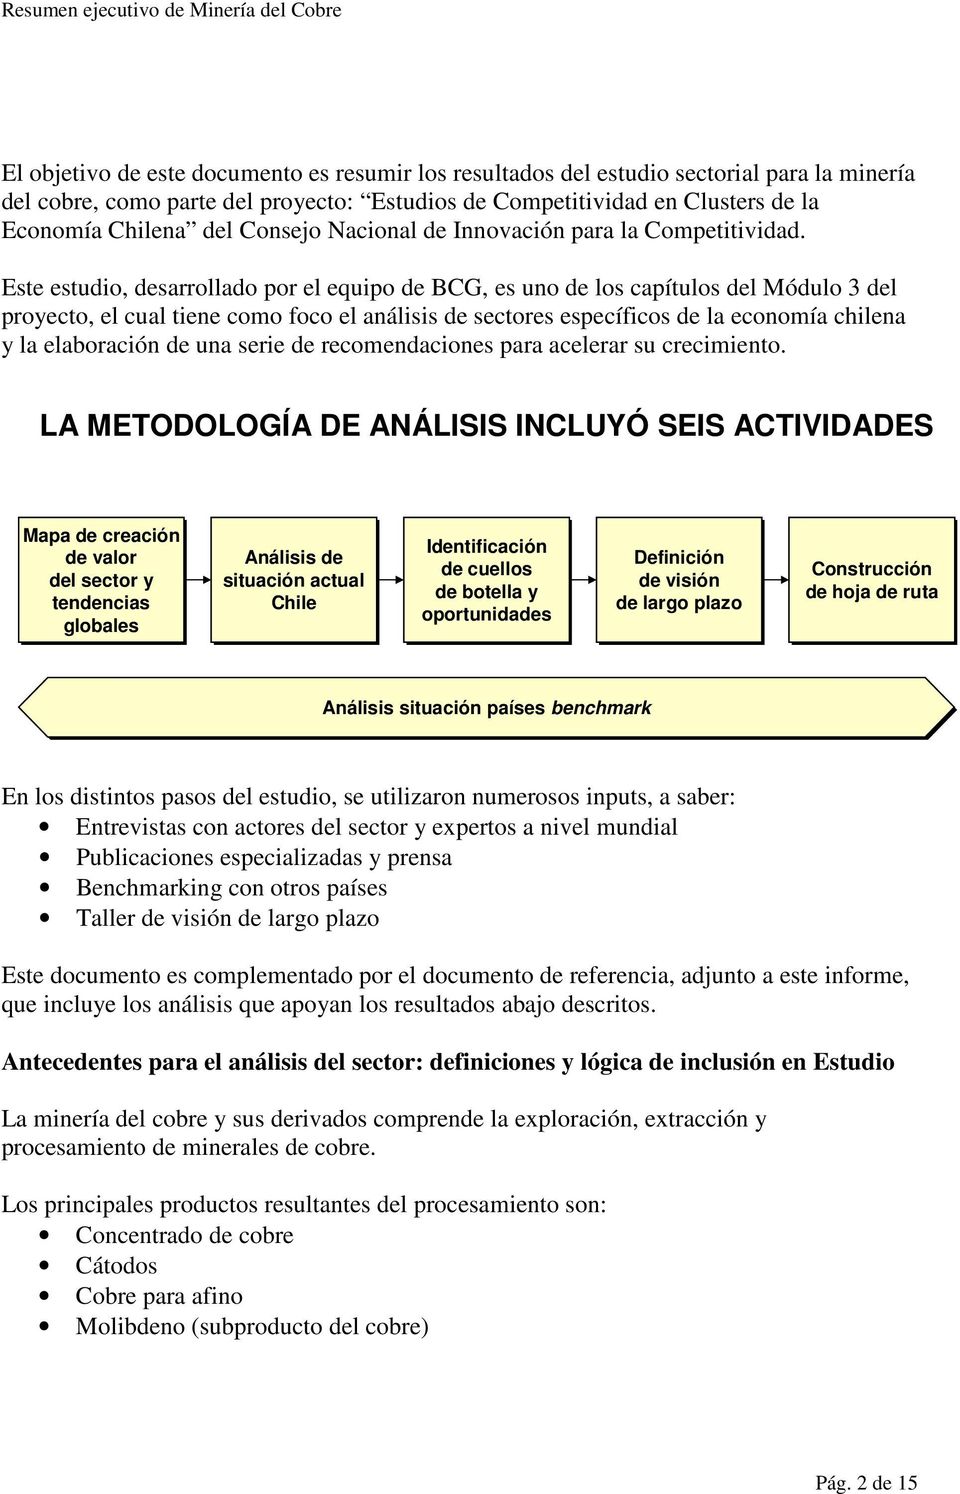 Este estudio, desarrollado por el equipo de BCG, es uno de los capítulos del Módulo 3 del proyecto, el cual tiene como foco el análisis de sectores específicos de la economía chilena y la elaboración